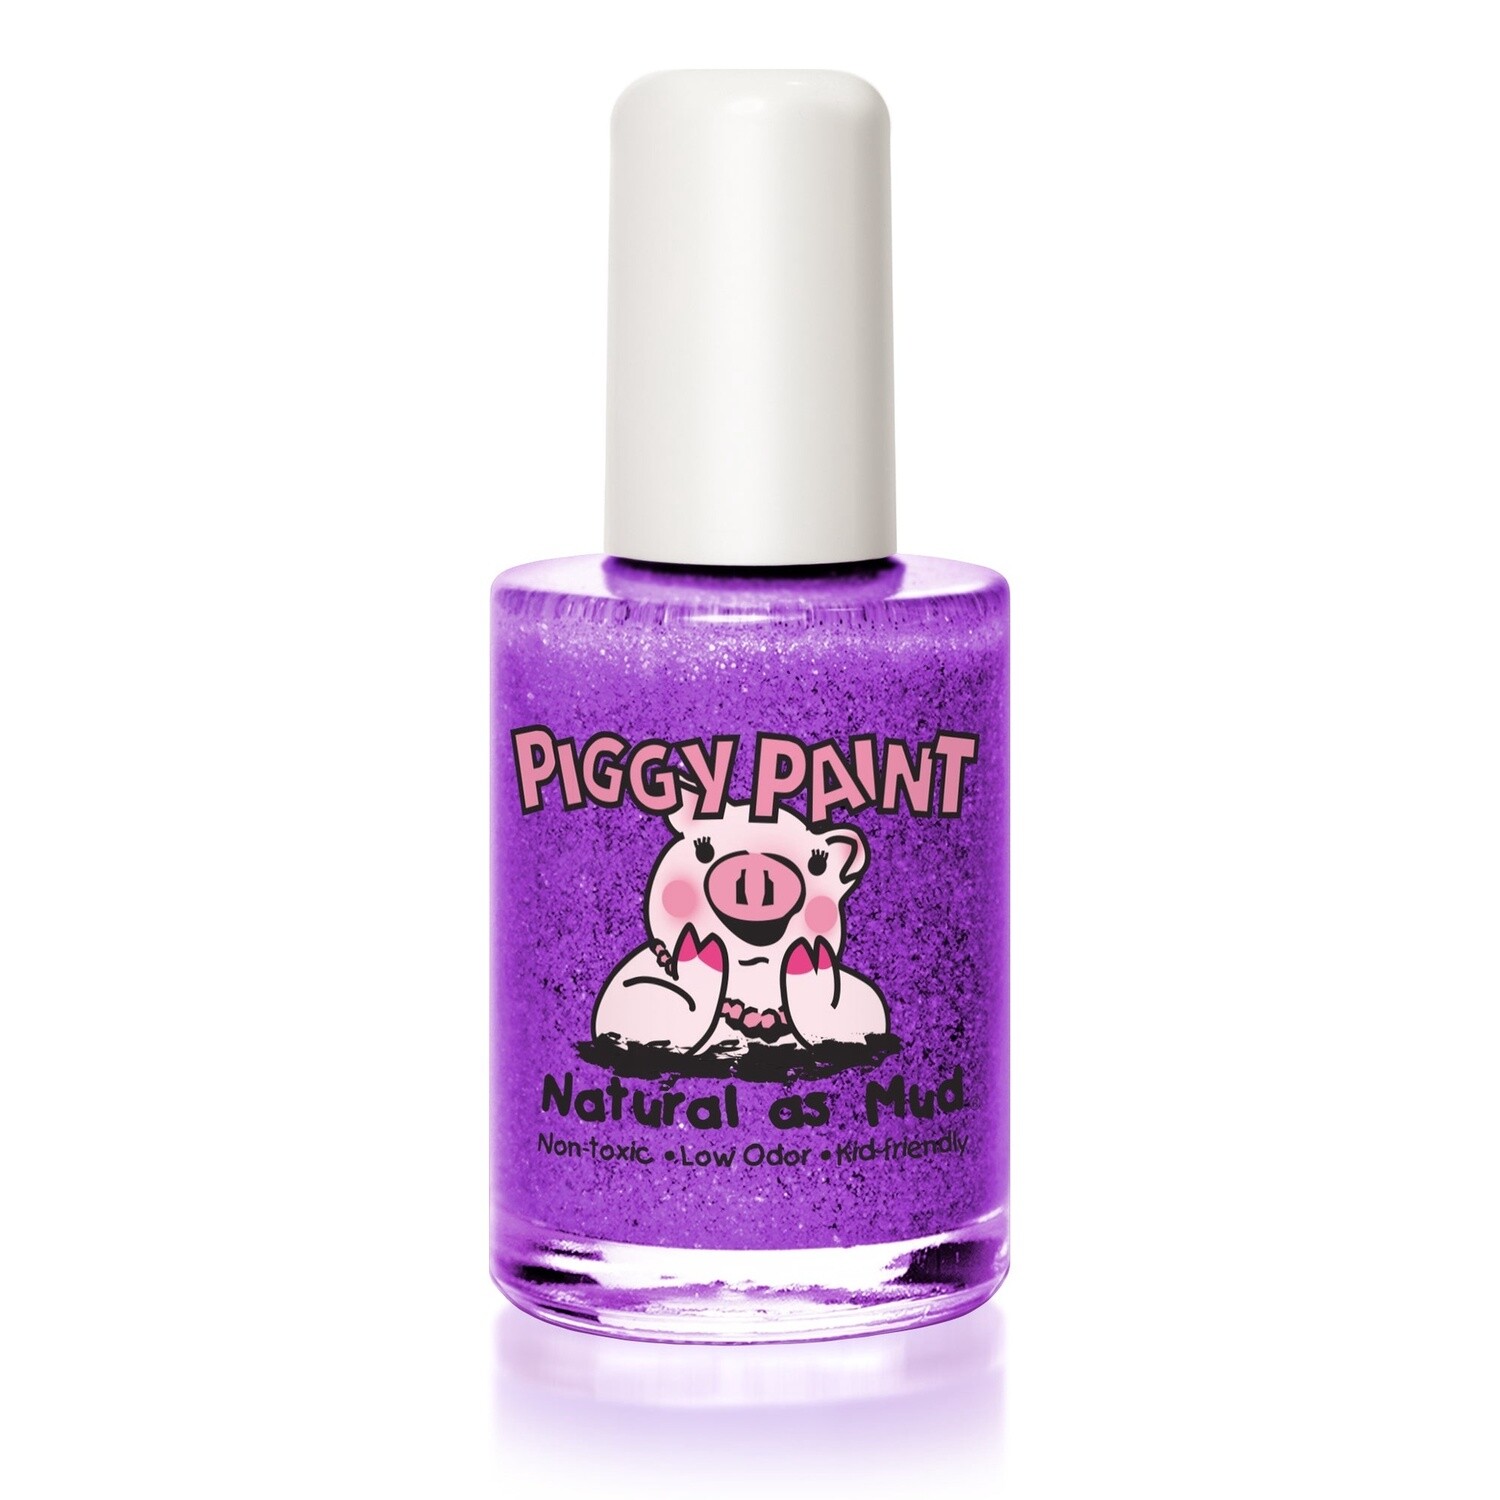 Piggy Paint Nail Polish - Let's Jam